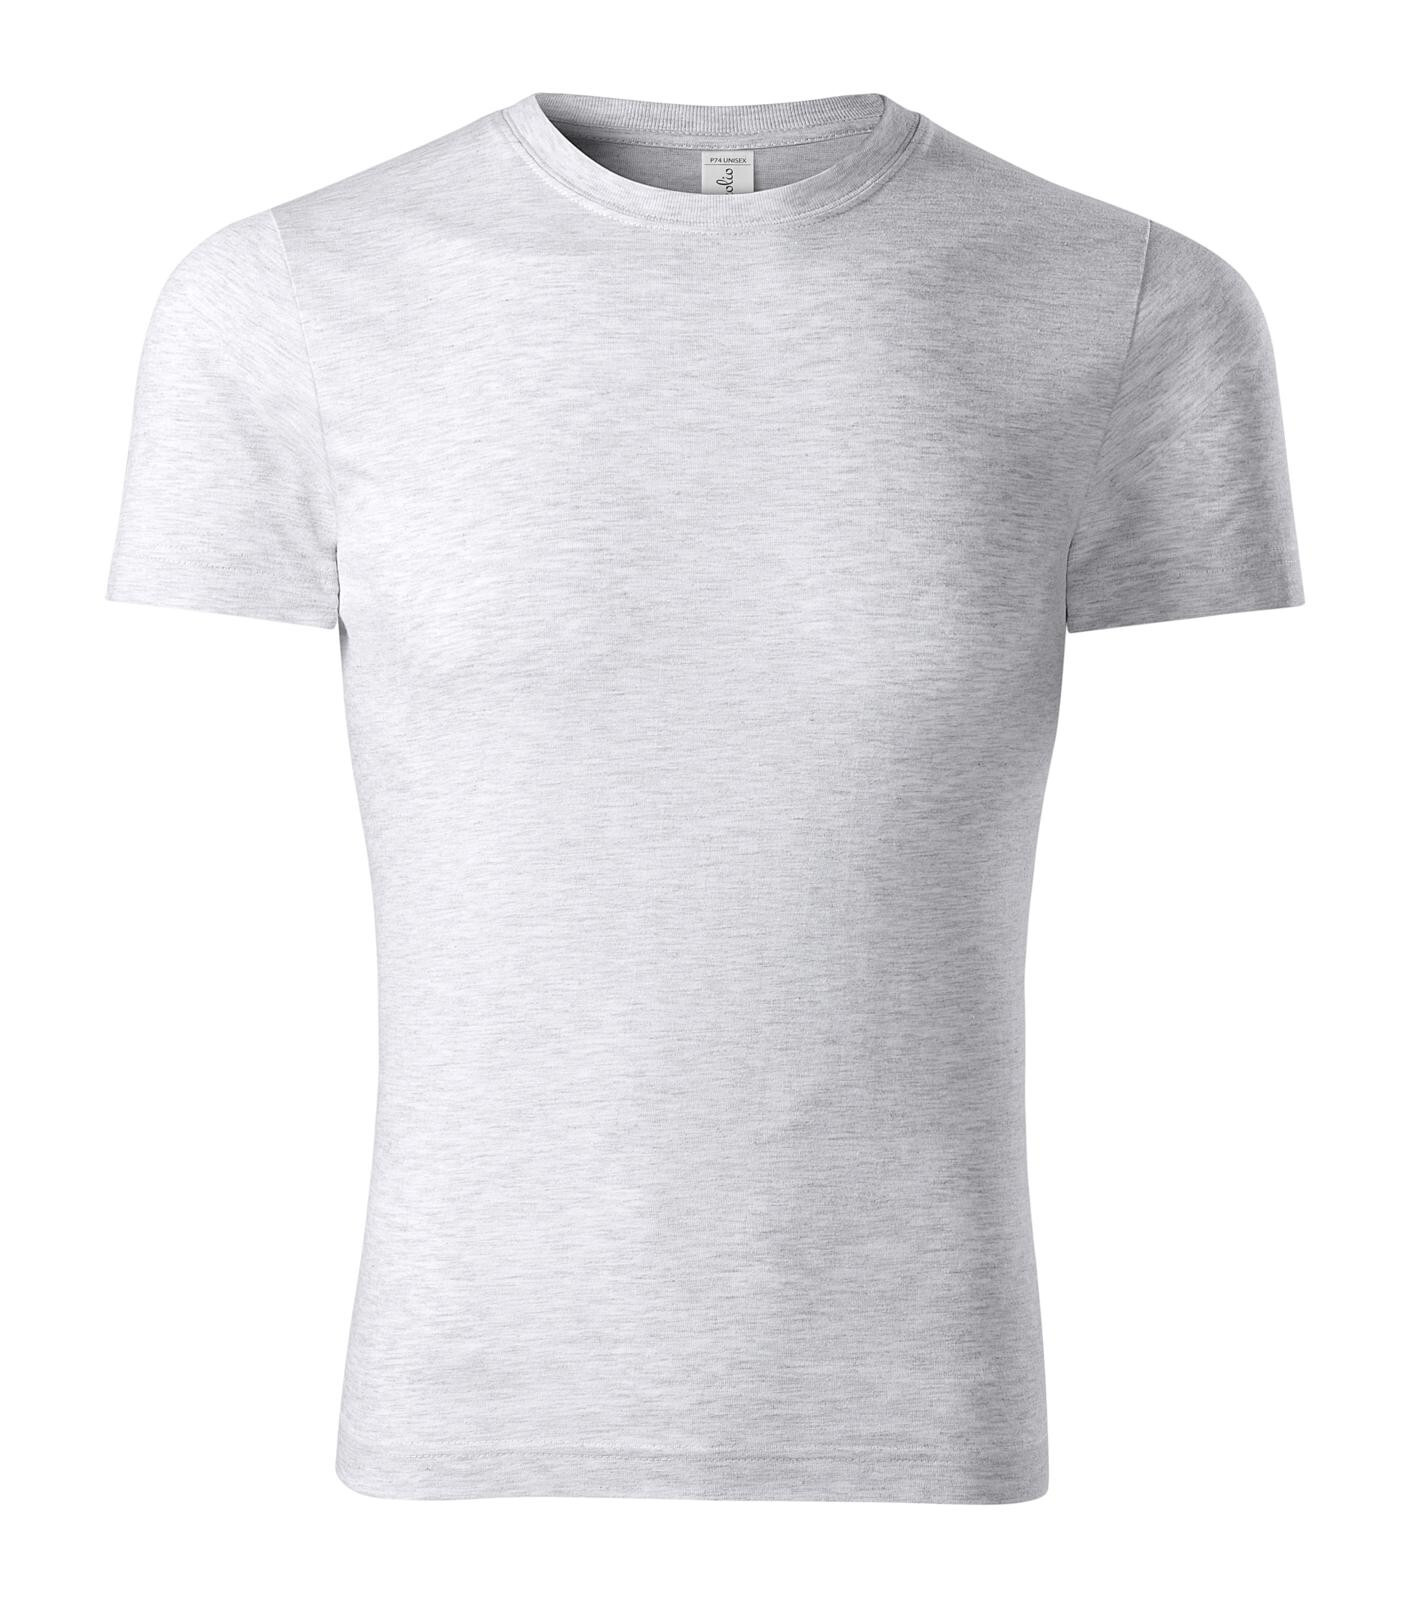 Unisex bavlnené tričko Piccolio Peak P74 - veľkosť: XL, farba: svetlosivý melír